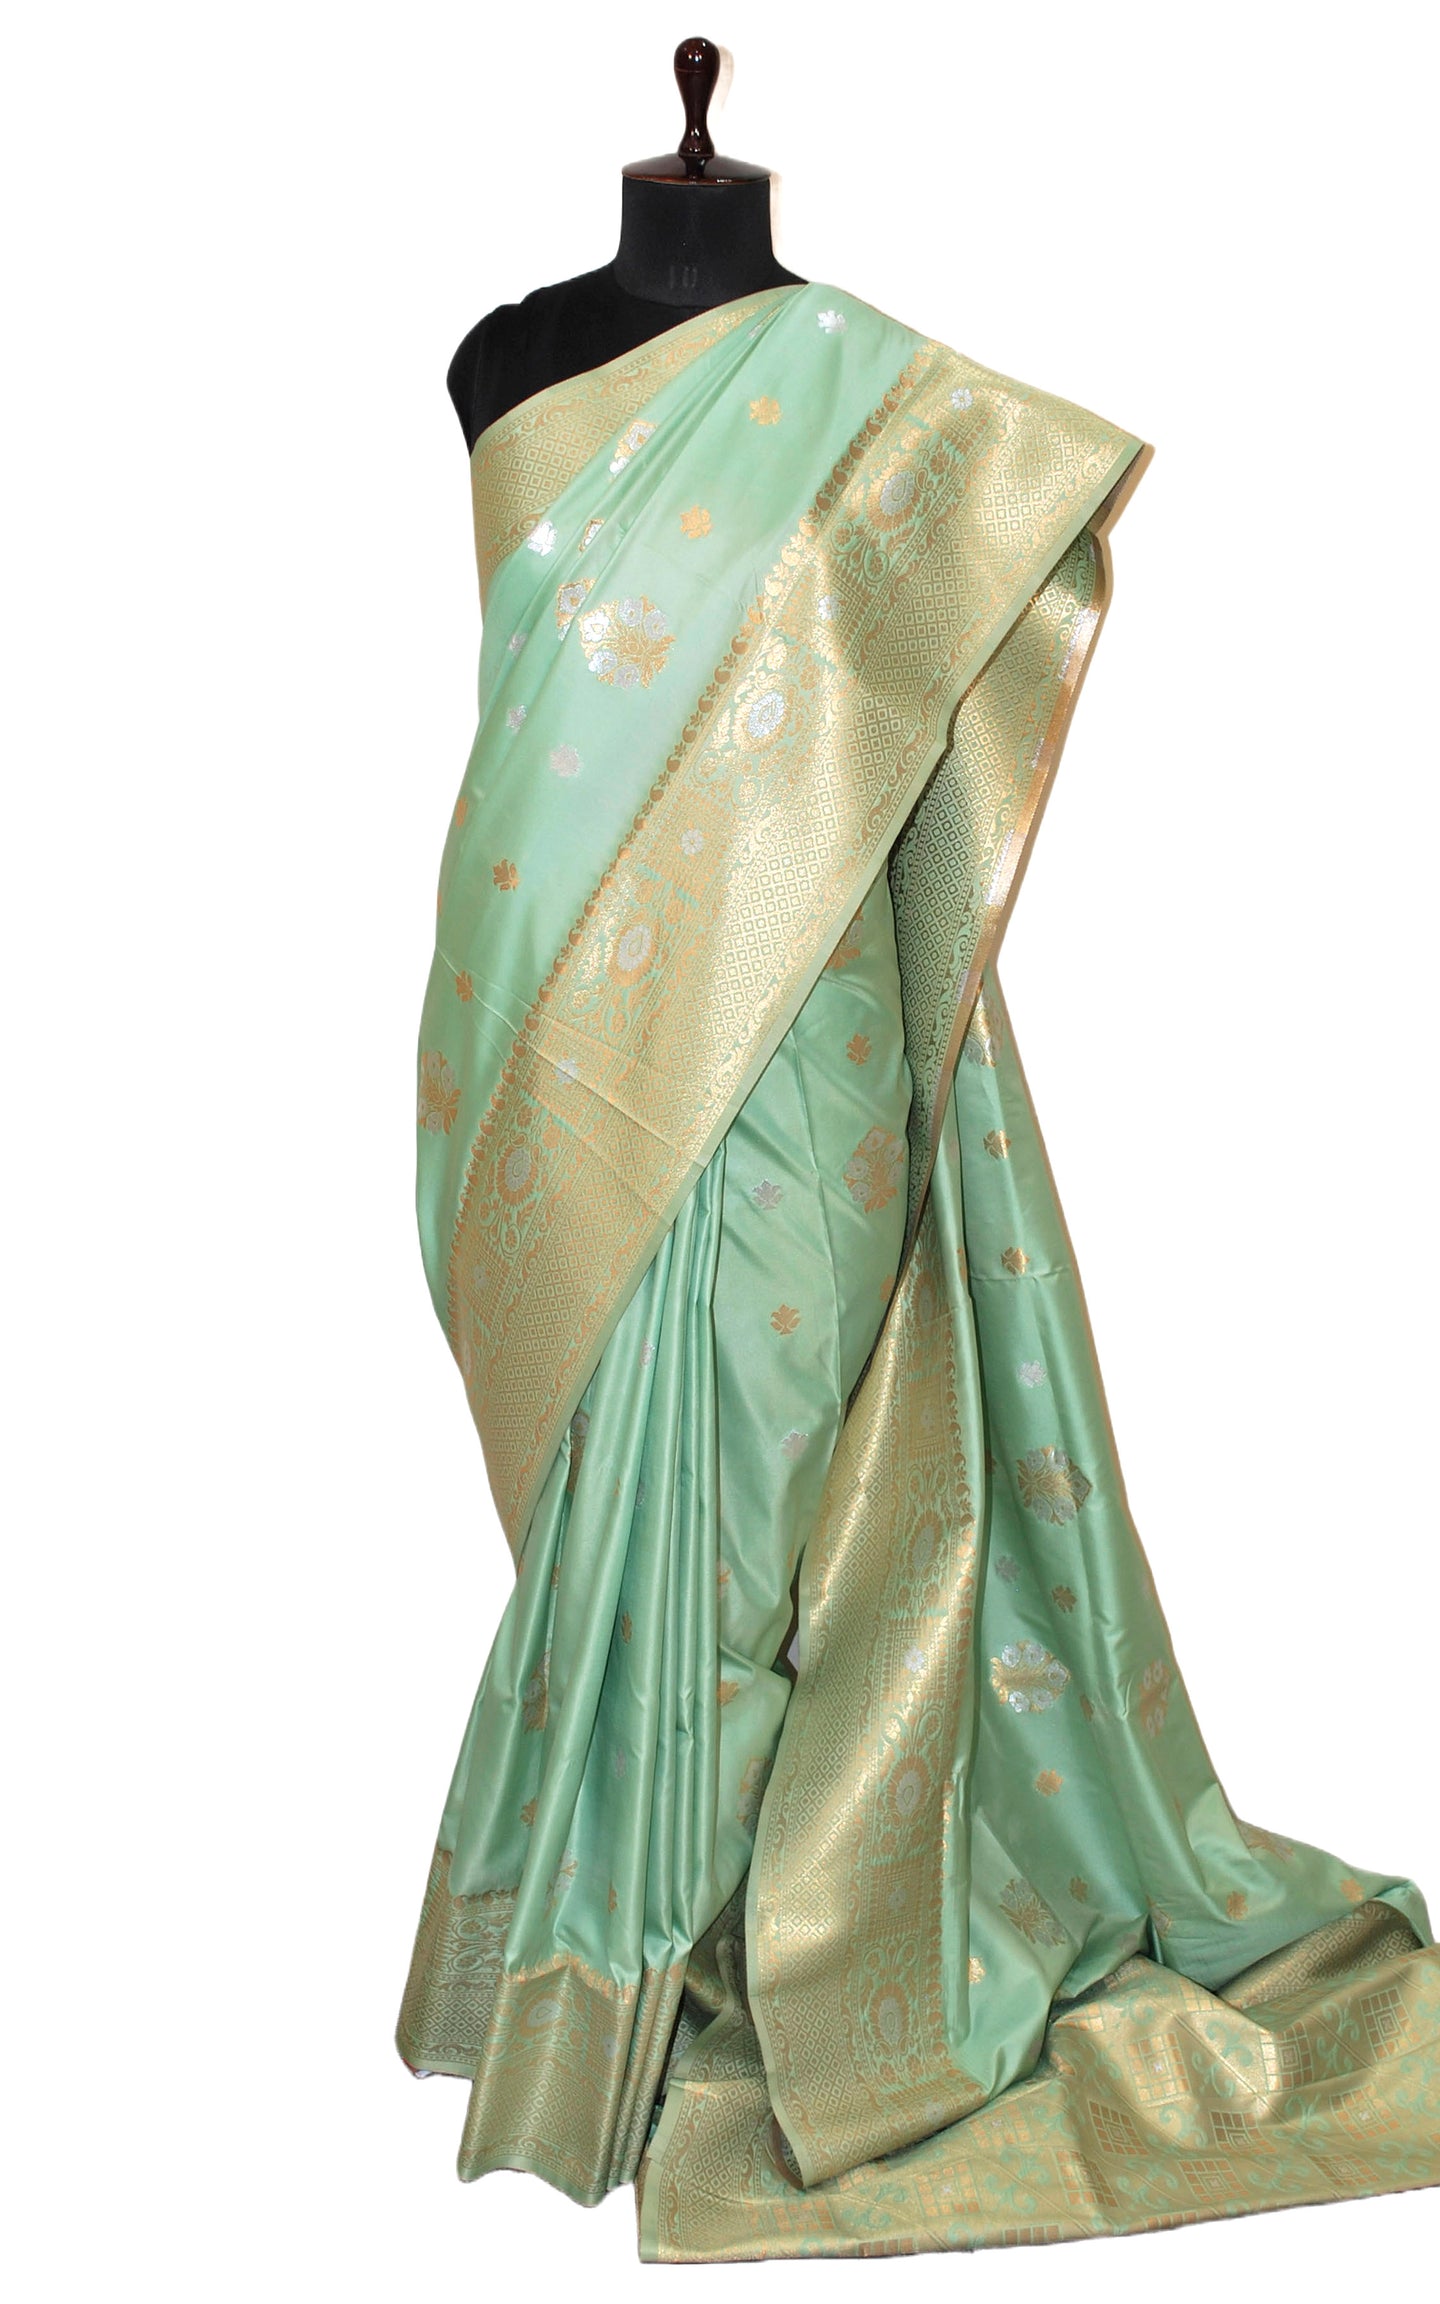 Kanchipuram Silk Saree in Mint Green, Silver and Matt Gold Woven Thread Nakshi Work